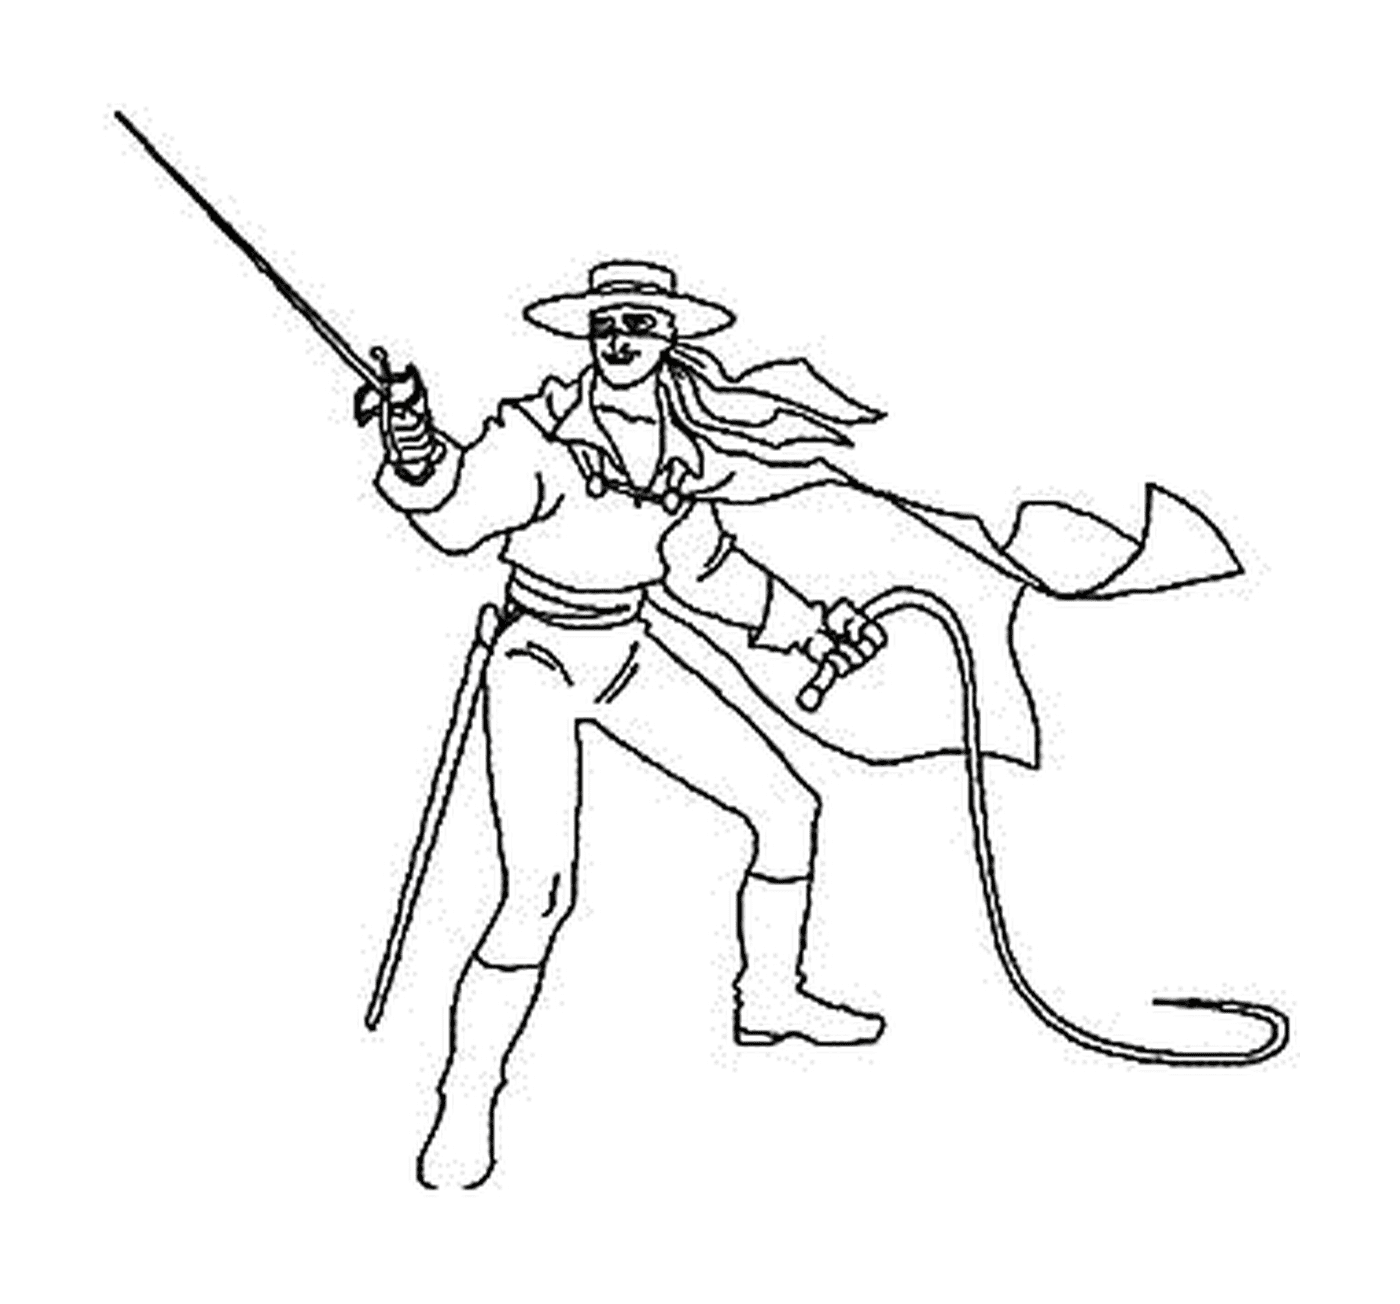  Zorro com seu chicote e espada 